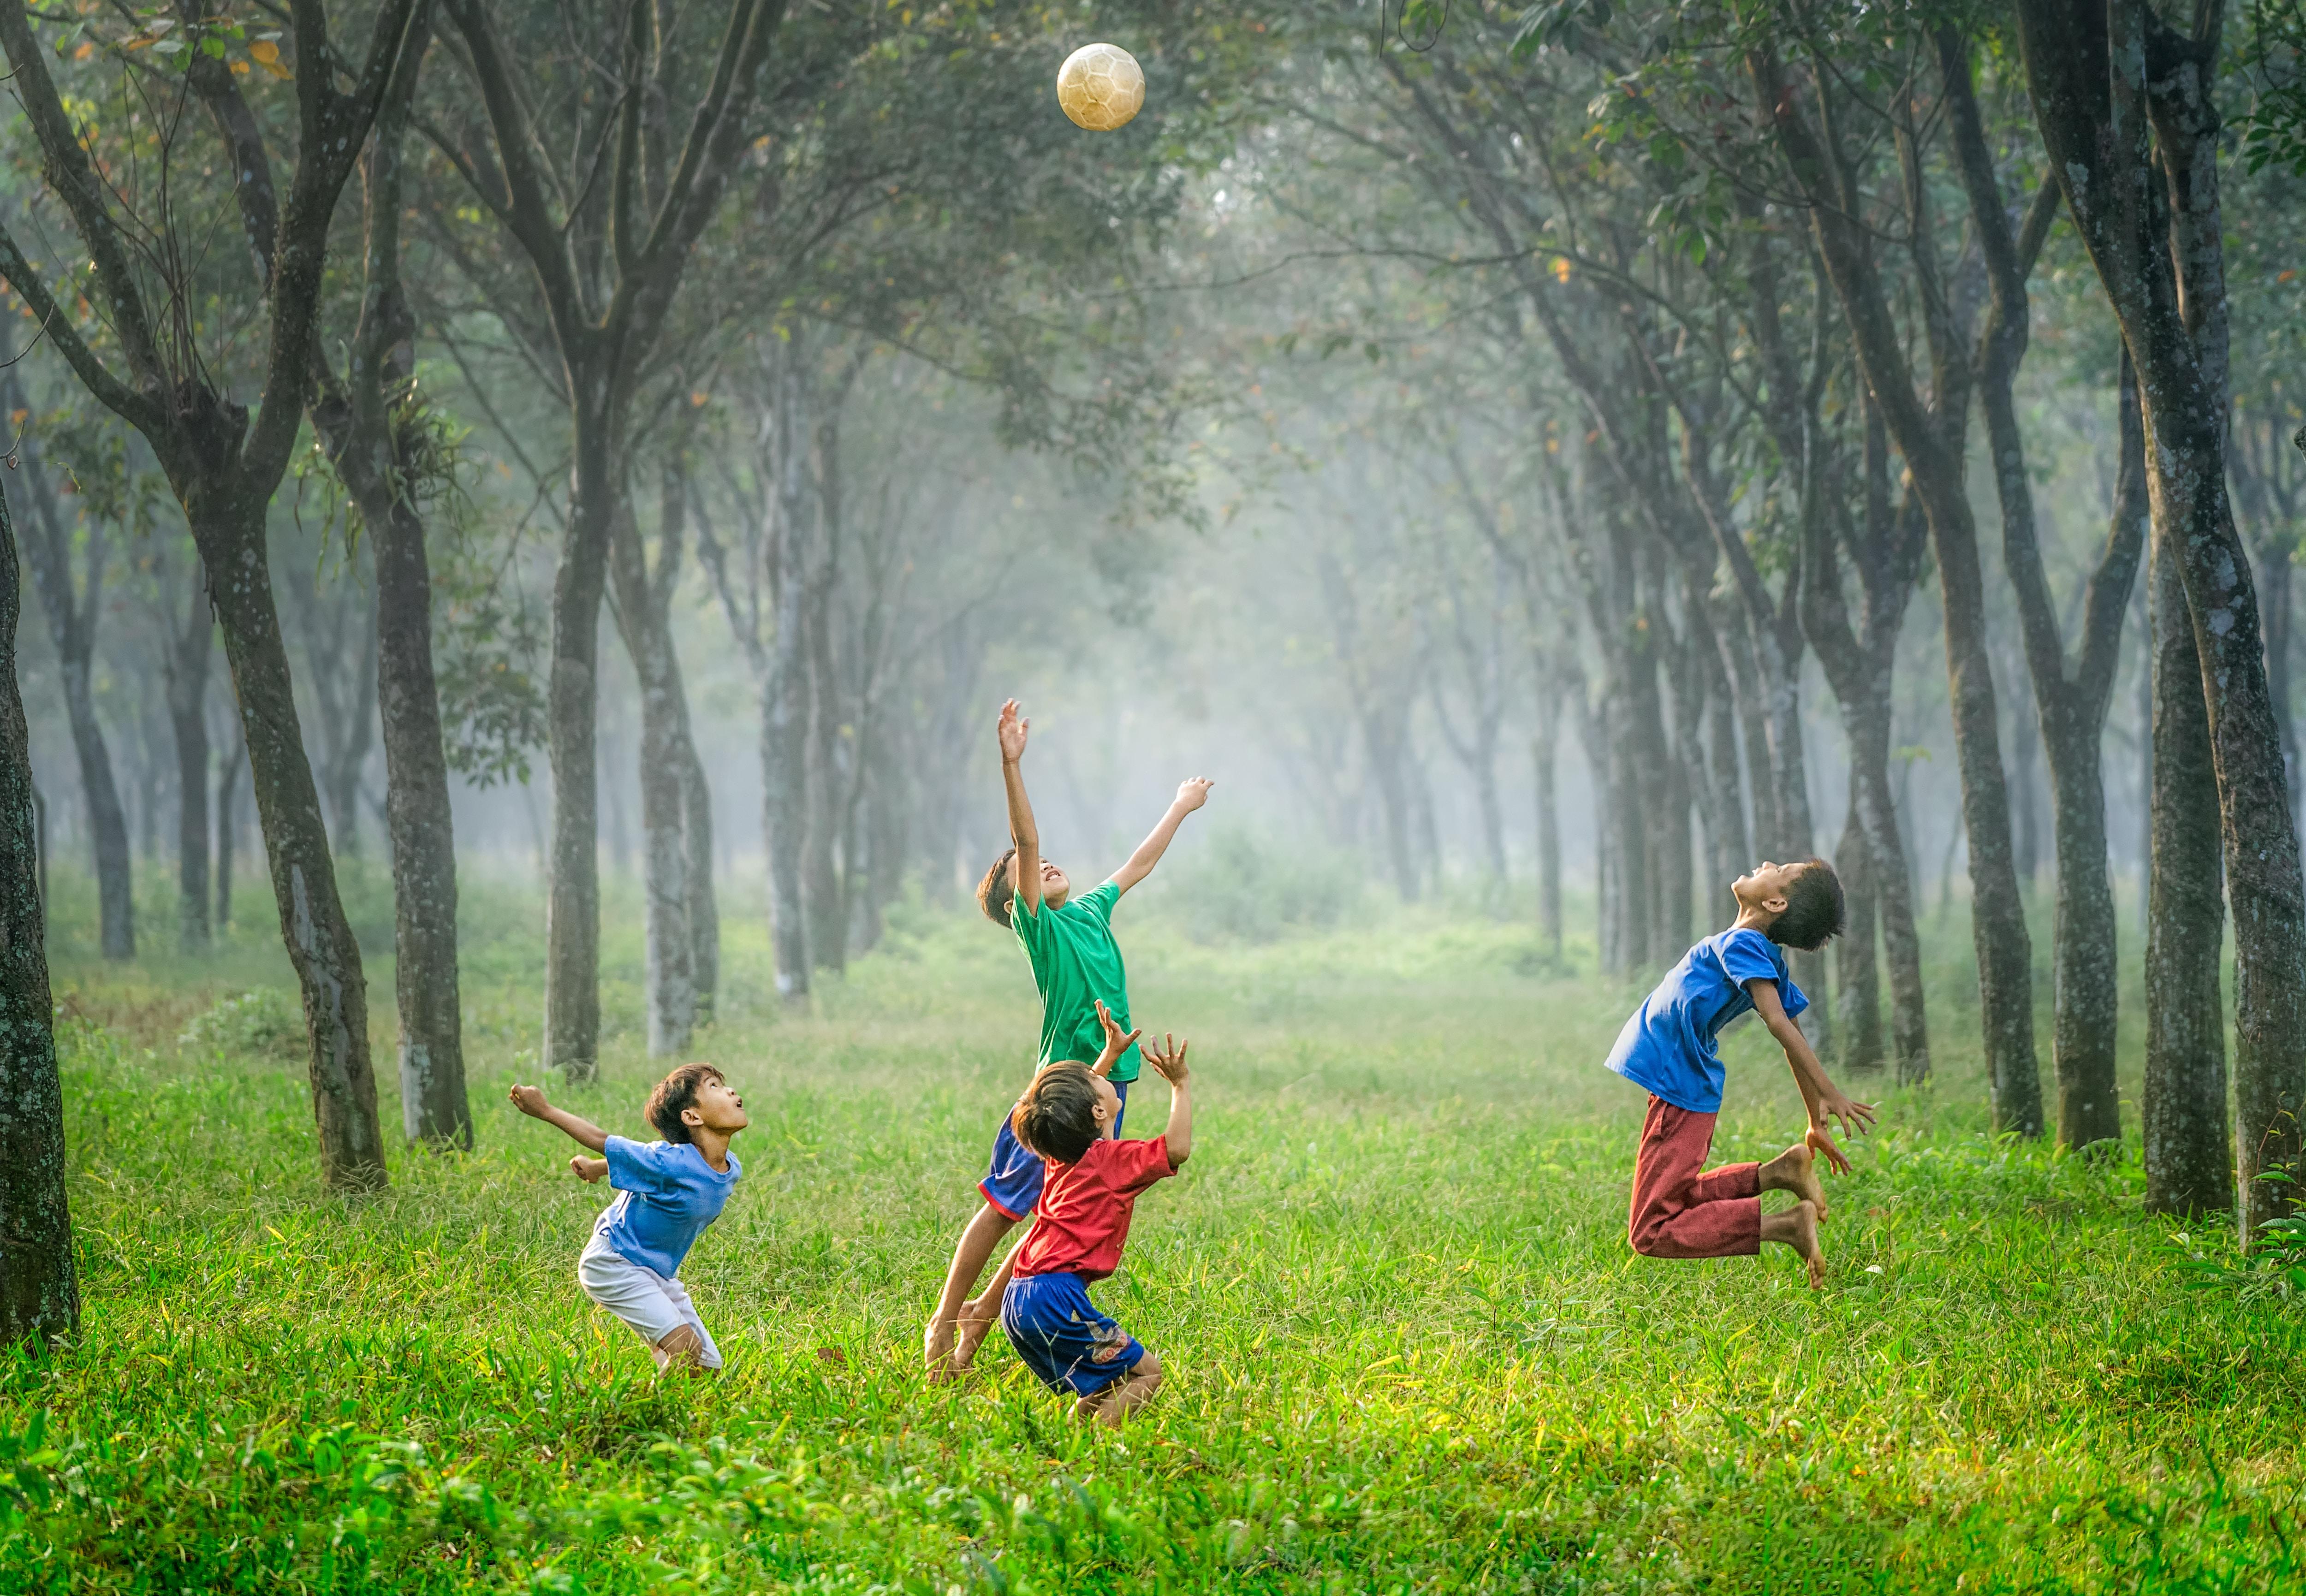 Cuatro niños juegan con una pelota. Foto: Robert Collins